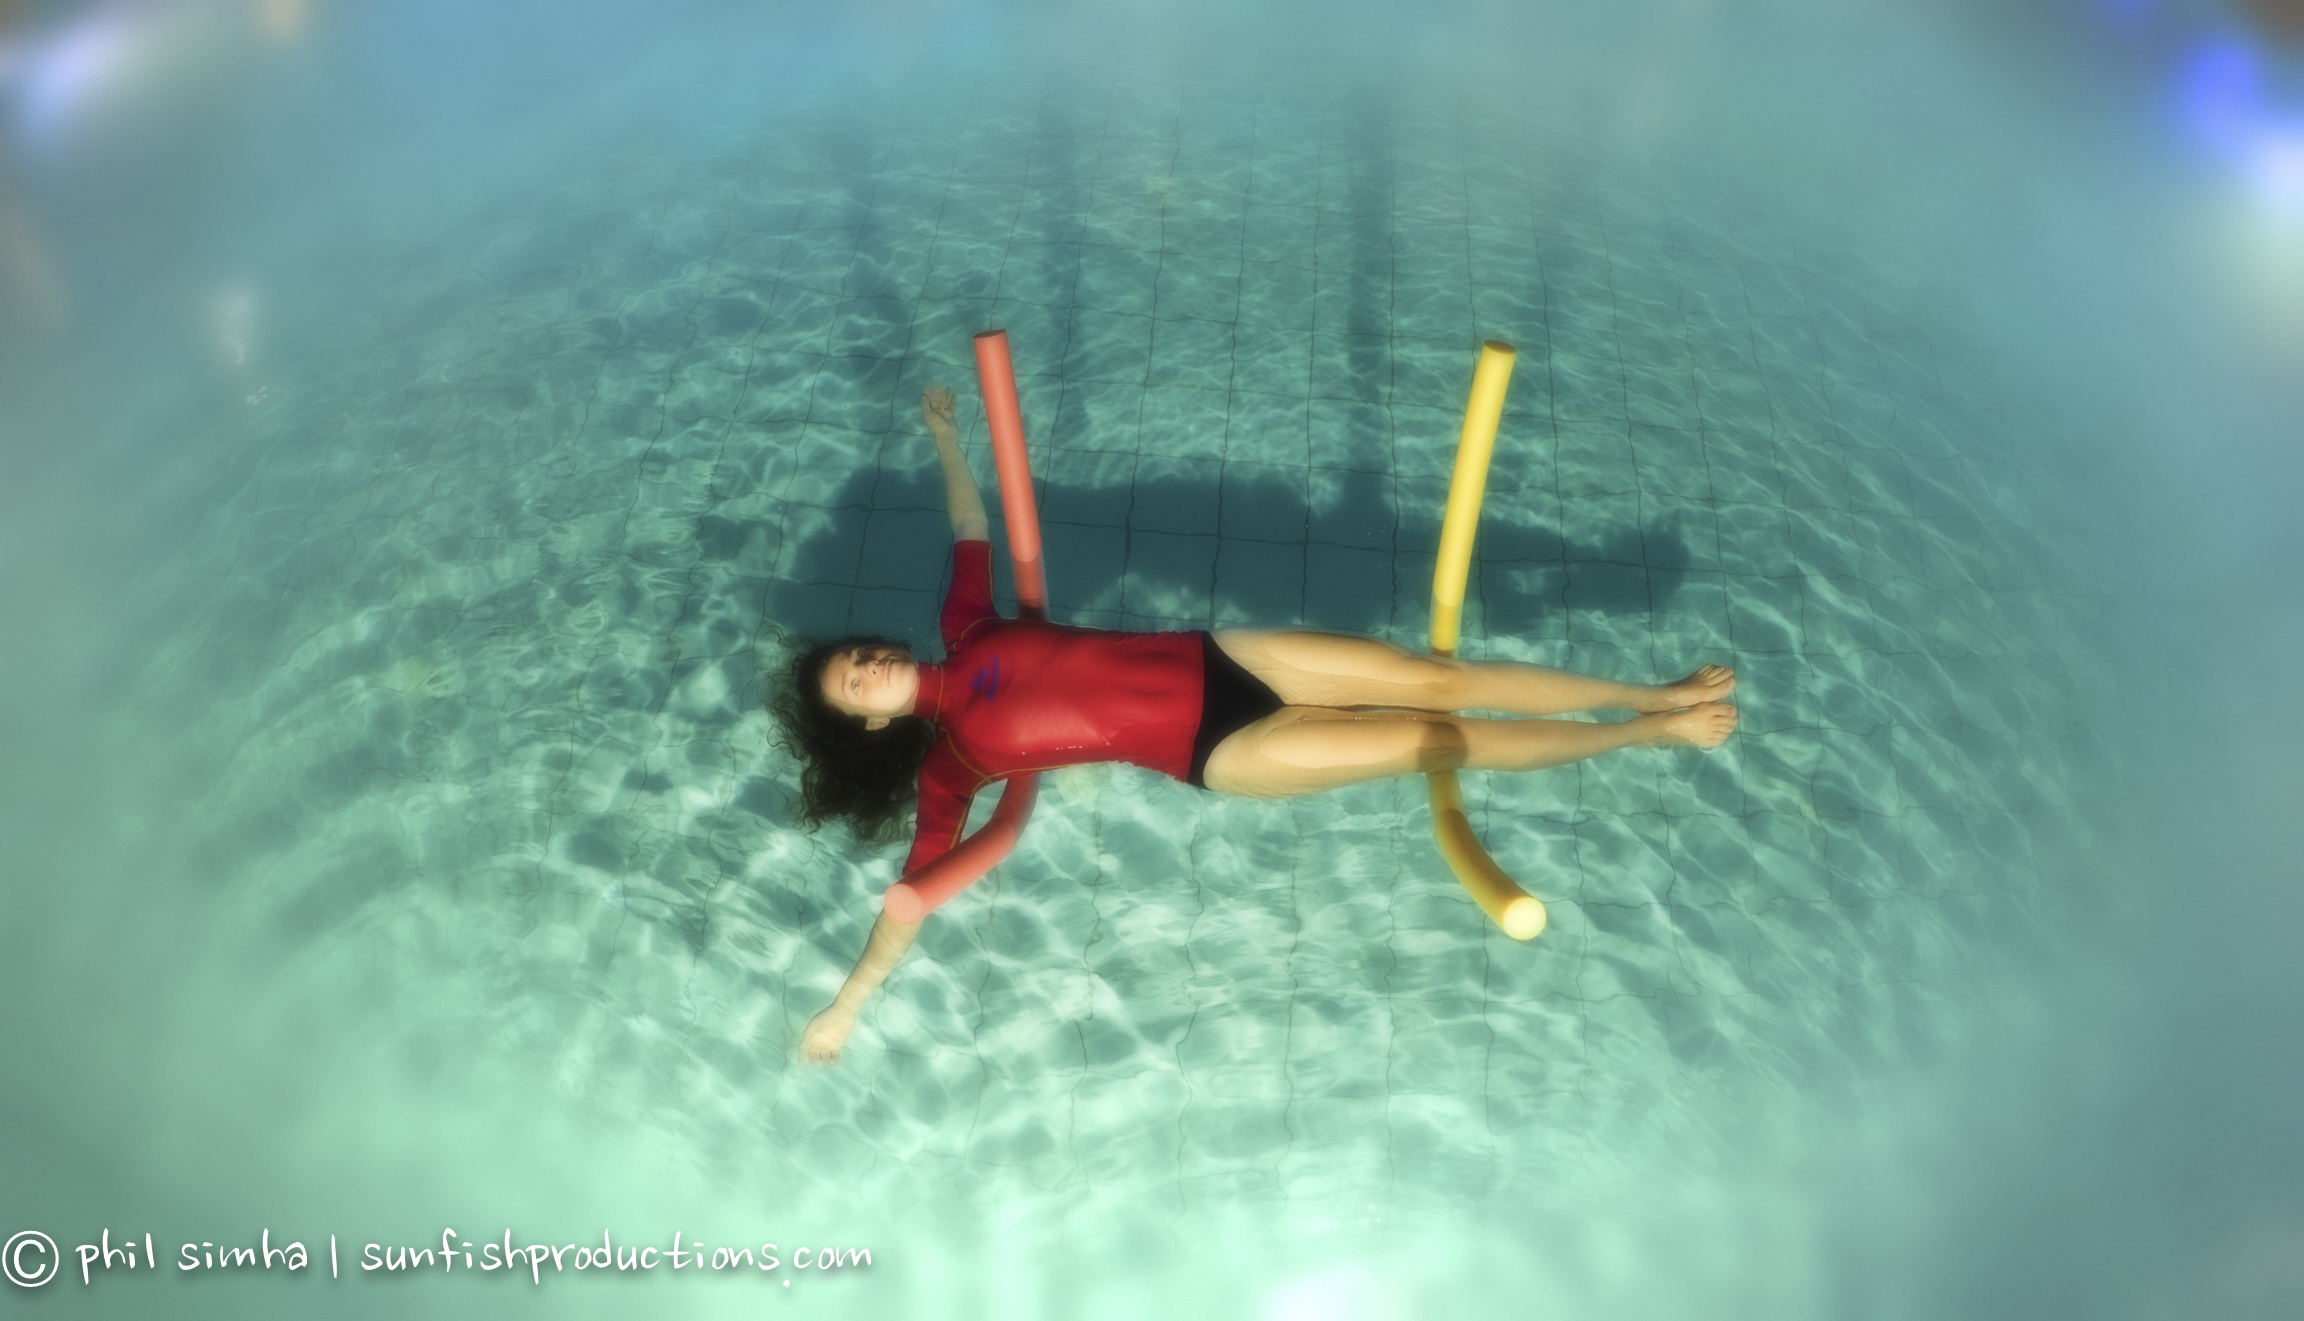 201606_relaqua_6161467-2_Edit (c) Freediving: apnea and meditation
(c) Phil Simha